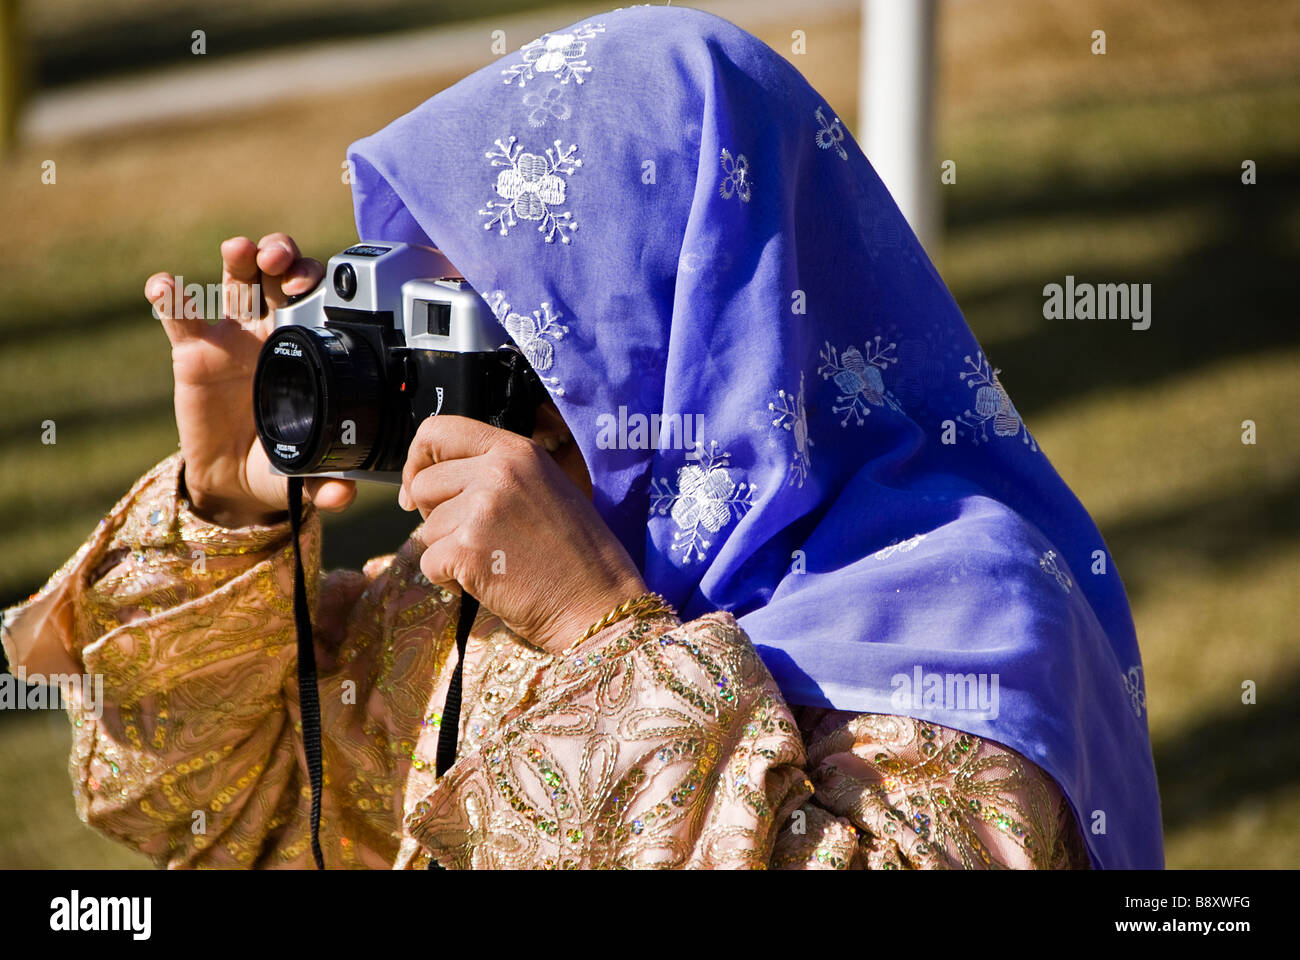 Femme avec des vêtements traditionnels de prendre une photo avec un vieil appareil photo, Sanliurfa, Turquie, Asie Banque D'Images